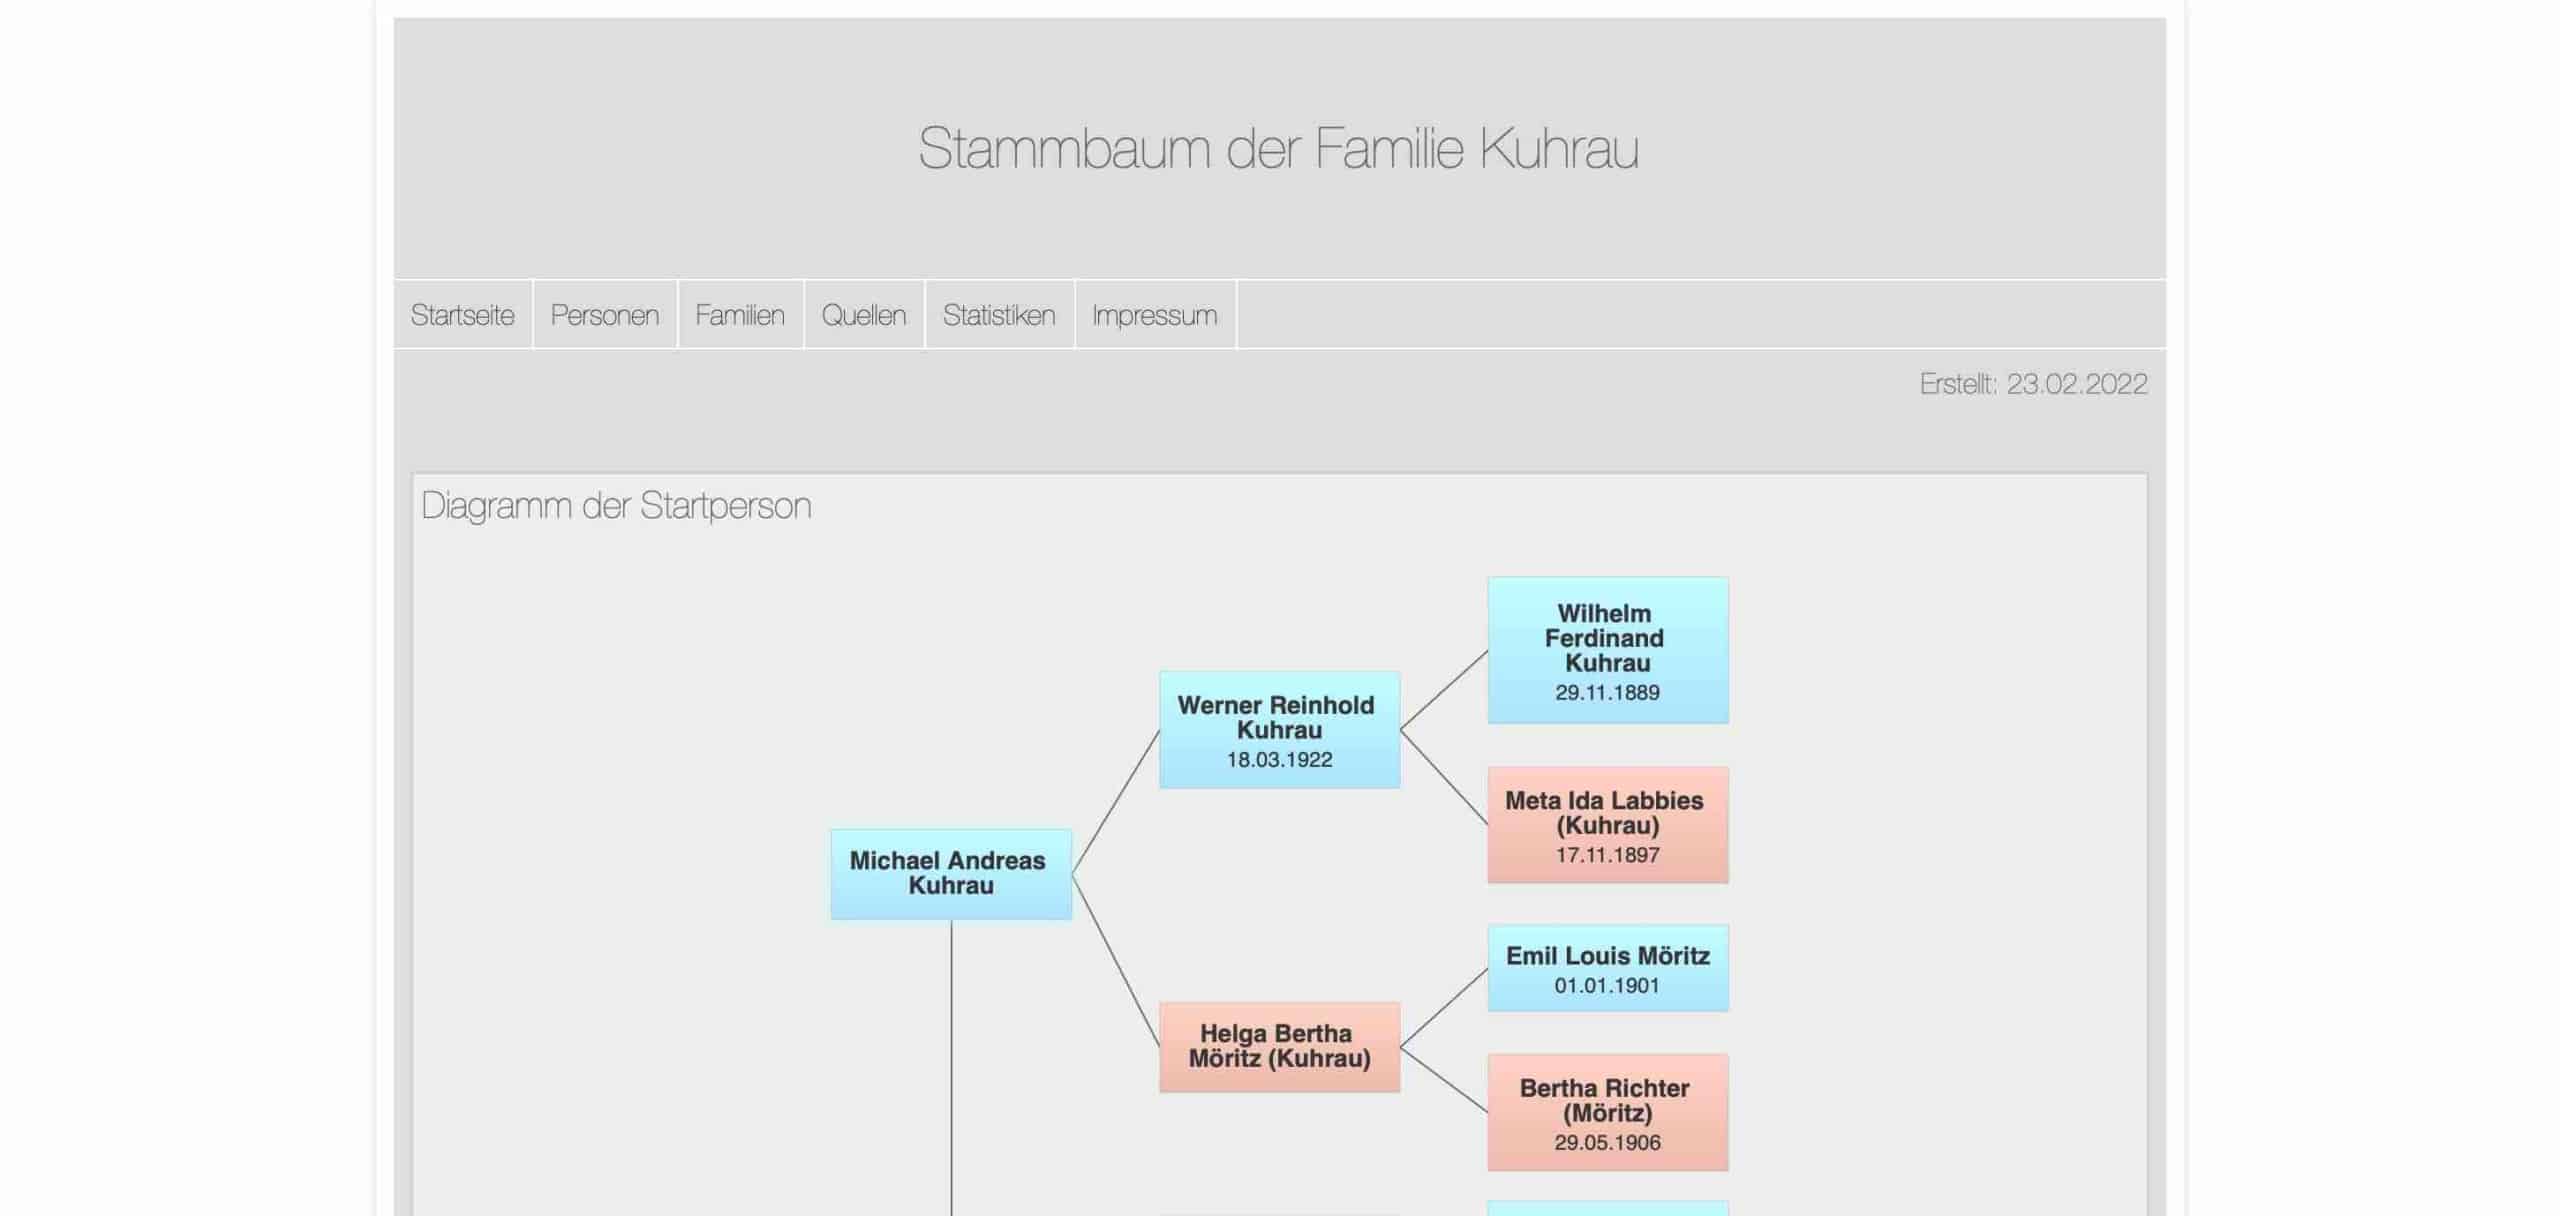 www.stammbaum.kuhrau.de